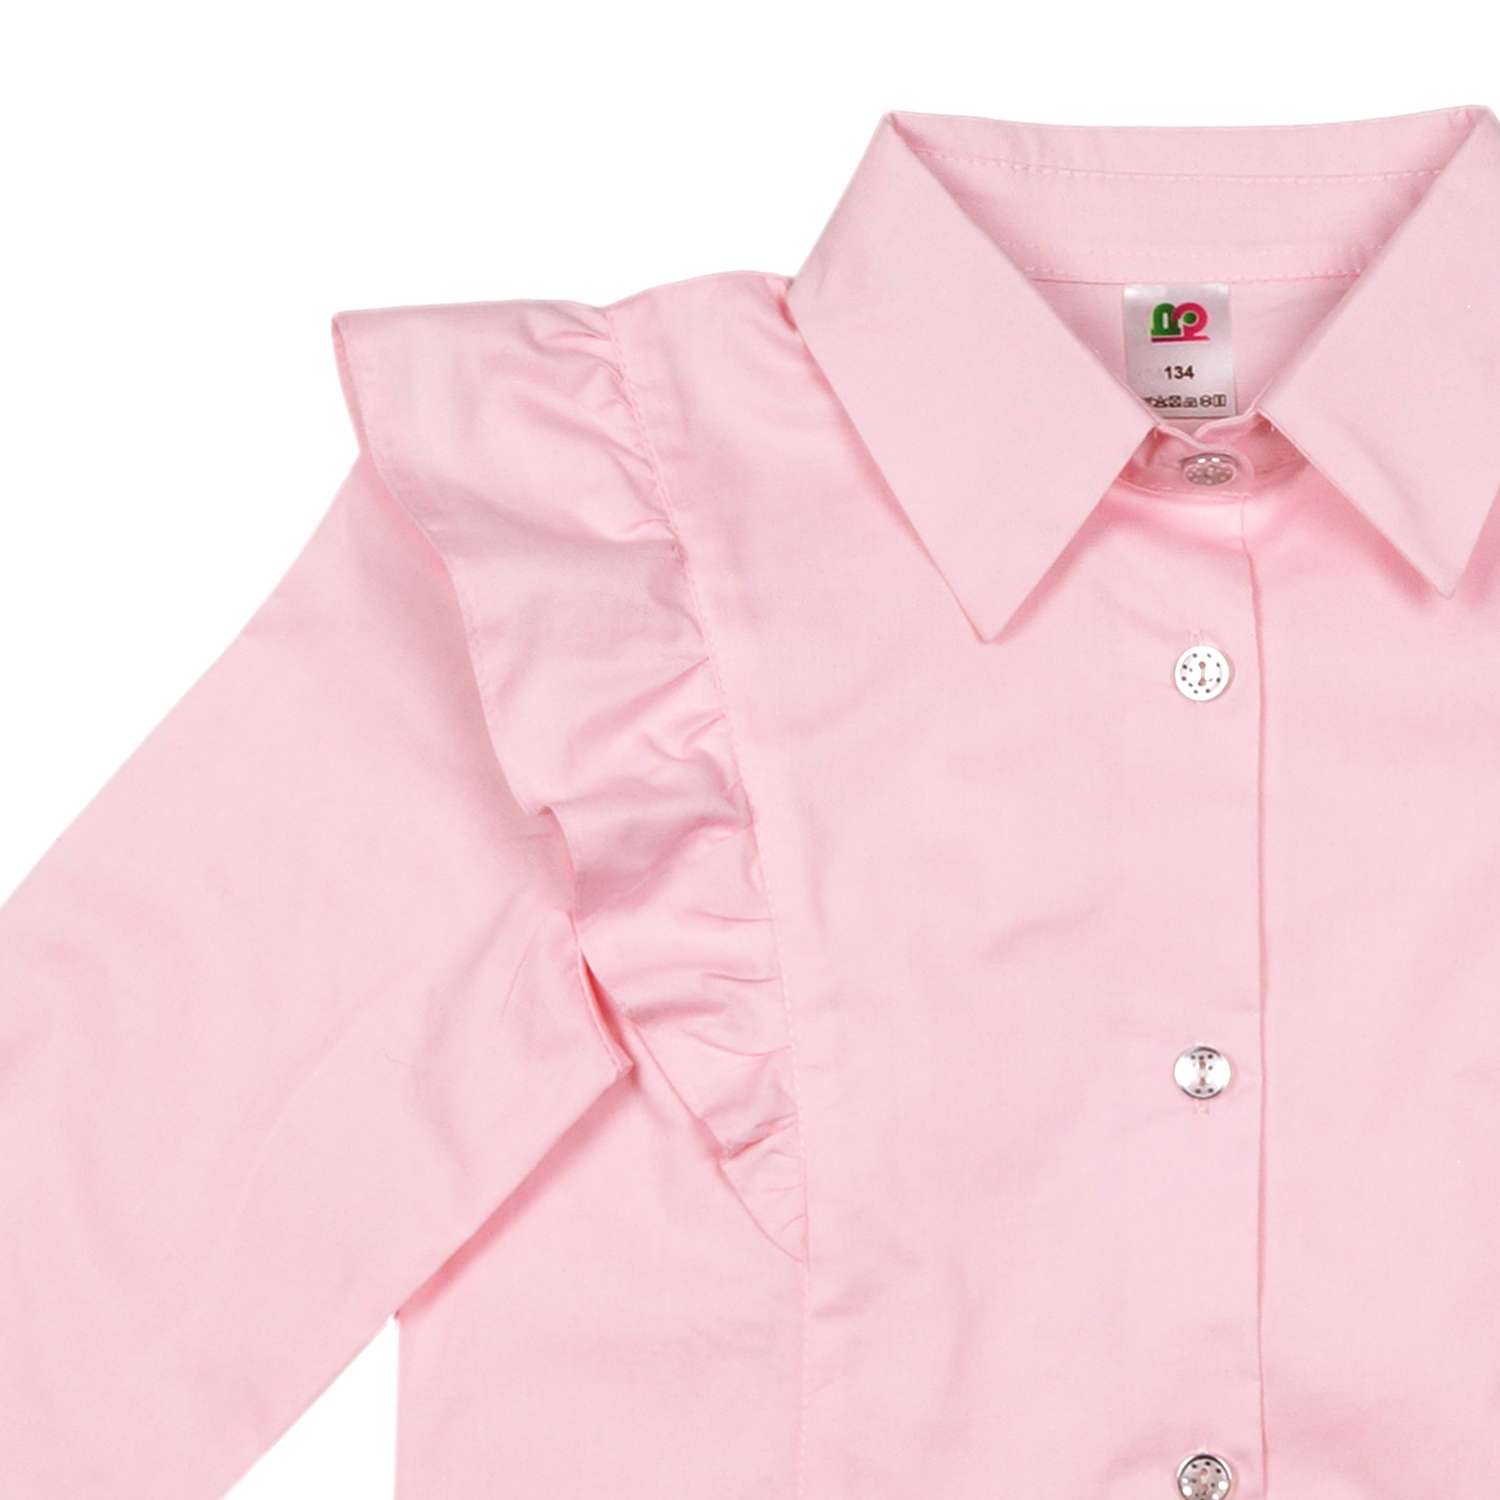 Блузка Детская Одежда BL-11000/розовый - фото 6